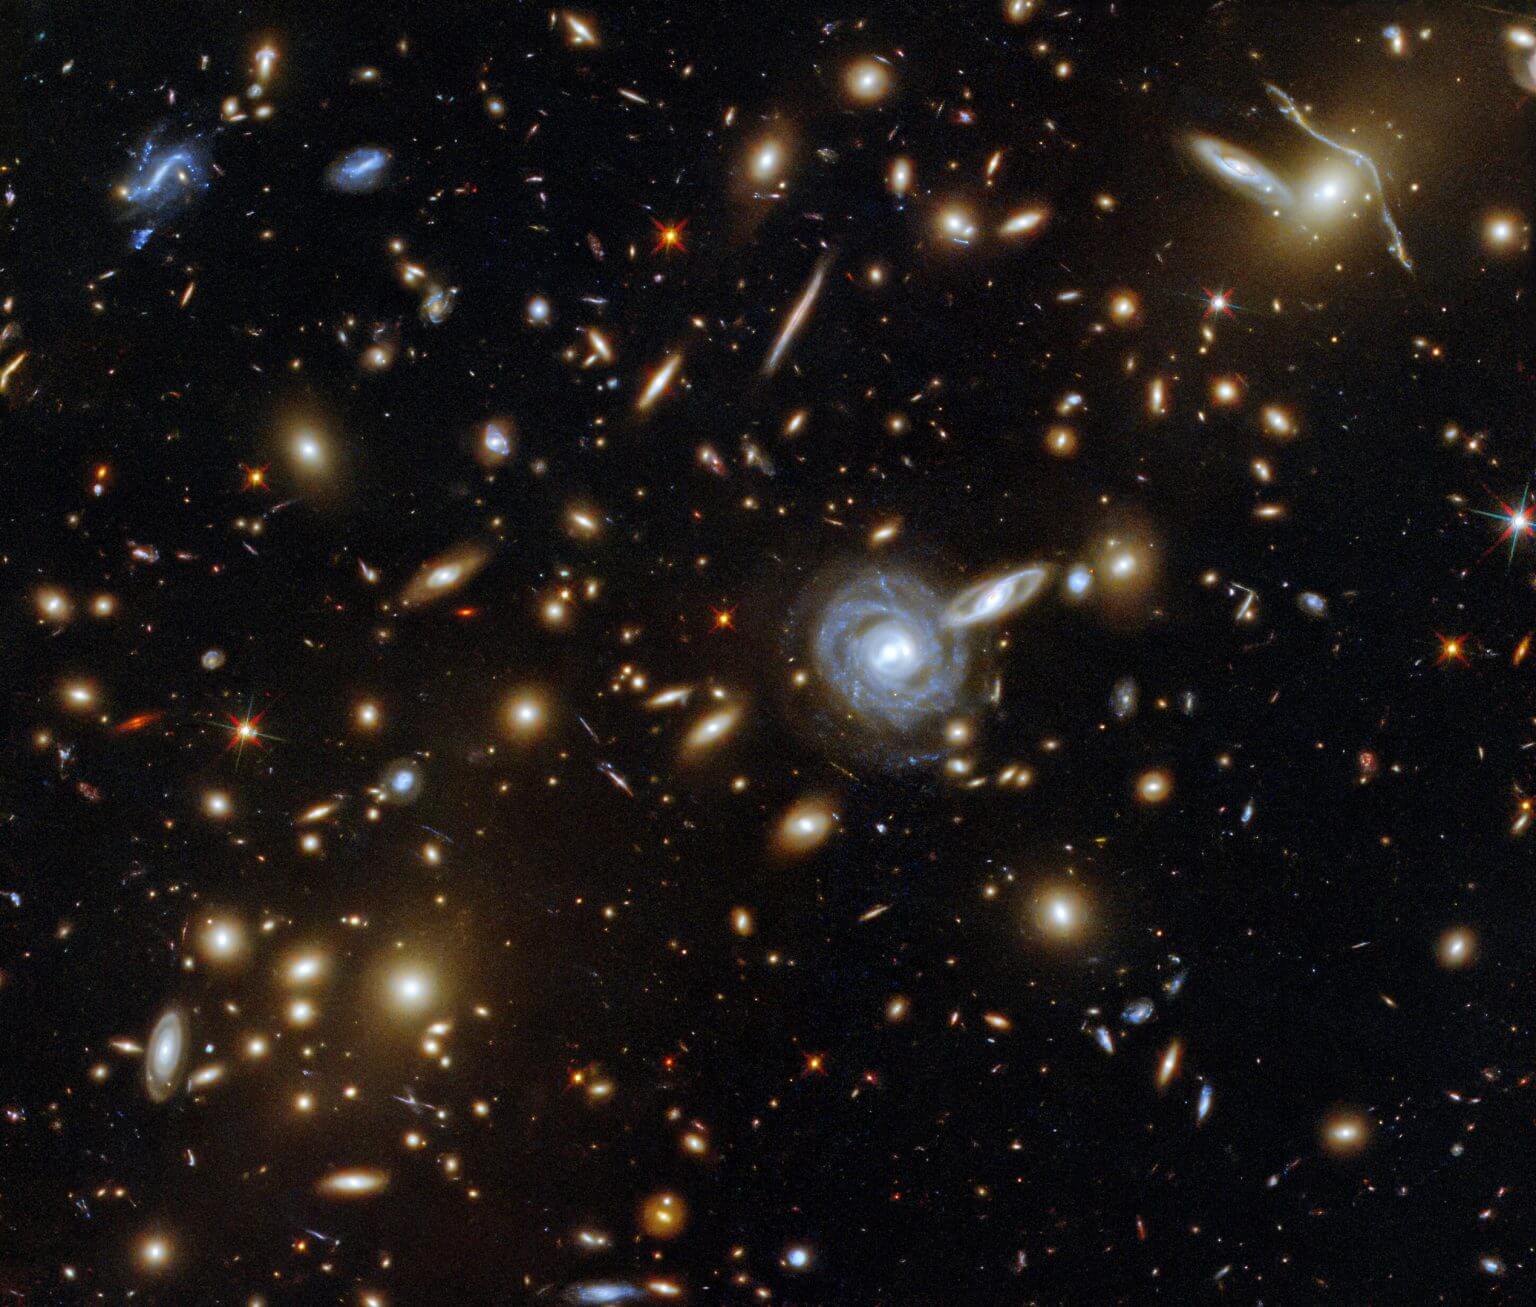 אשכול הגלקסיות ACO S 295 שצולם על ידי טלסקופ החלל האבל. קרדיט: ESA / האבל ונאס"א, פ 'פאקוד, ד' קוא